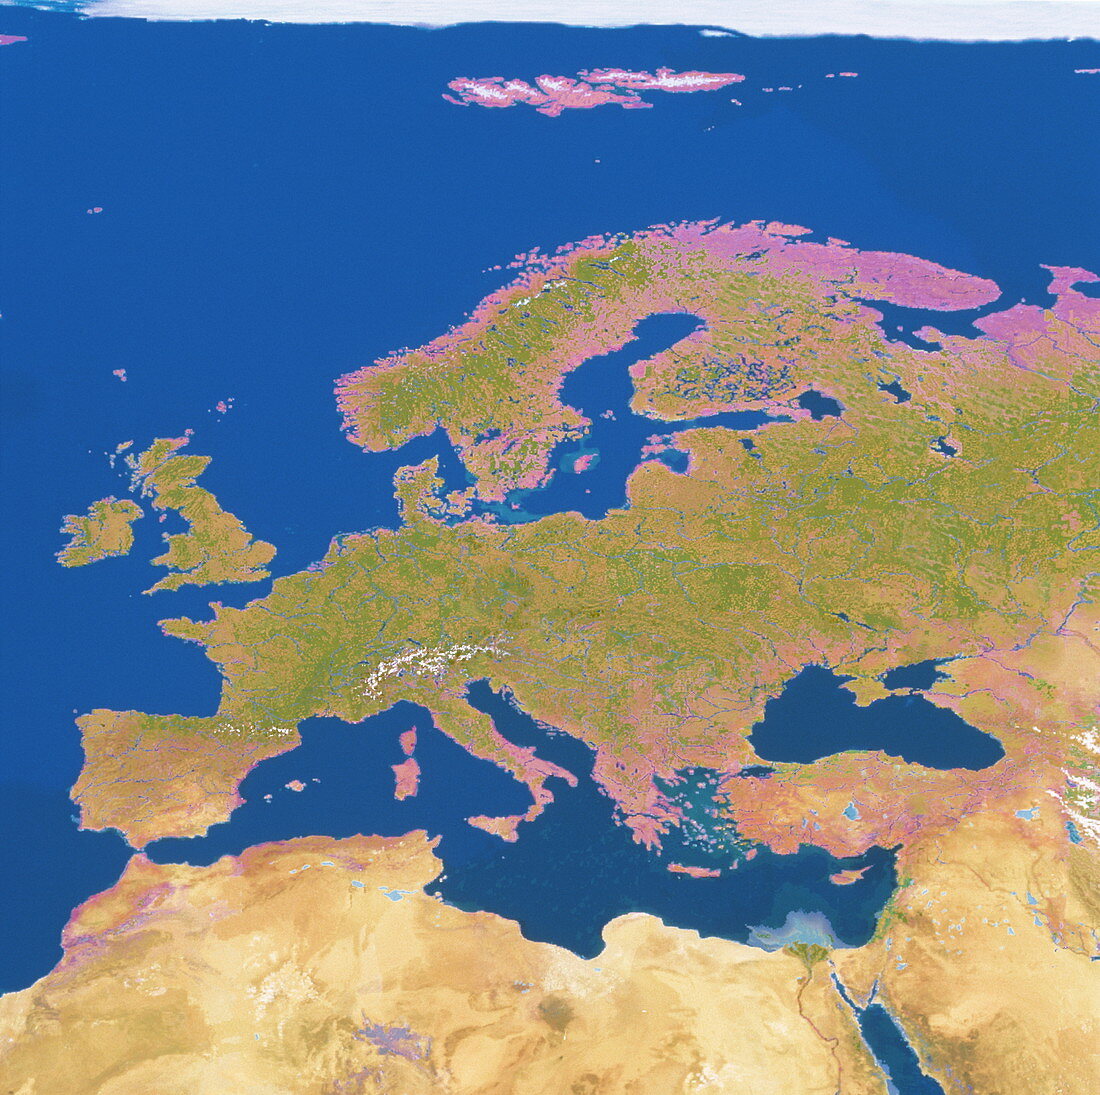 Geosphere image of Europe